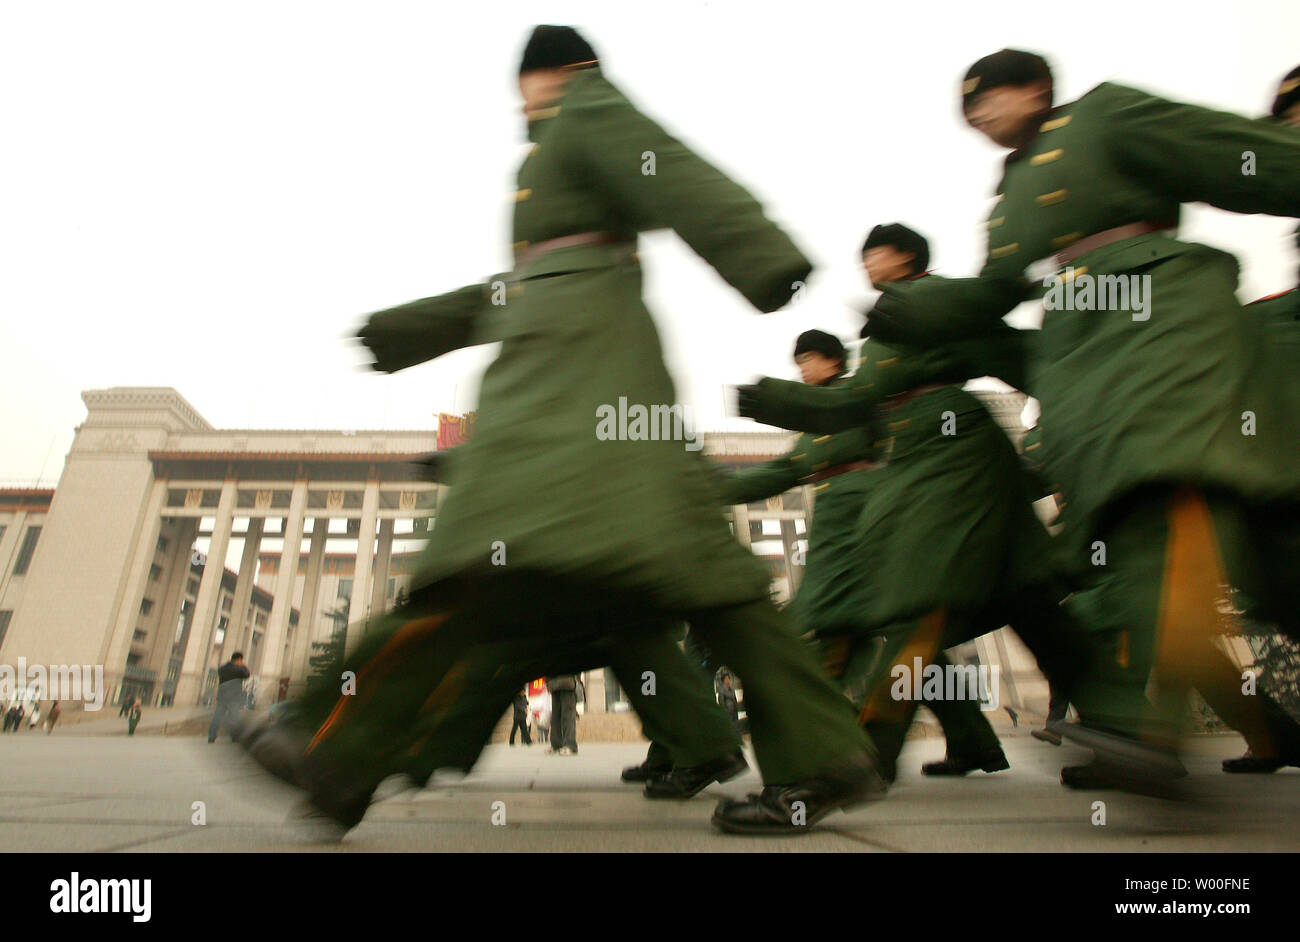 Soldati cinesi marzo del passato il museo della rivoluzione culturale nel centro di Pechino, Cina, il 21 gennaio 2007 la Cina globale della forza militare è scesa da 1,7 milioni di truppe dal 1985 ed è stimato a riposo a 2,3 milioni, ancora il più grande del mondo di forza, secondo una ha rilasciato di recente libro bianco del governo sulla difesa nazionale. (UPI foto/Stephen rasoio) Foto Stock